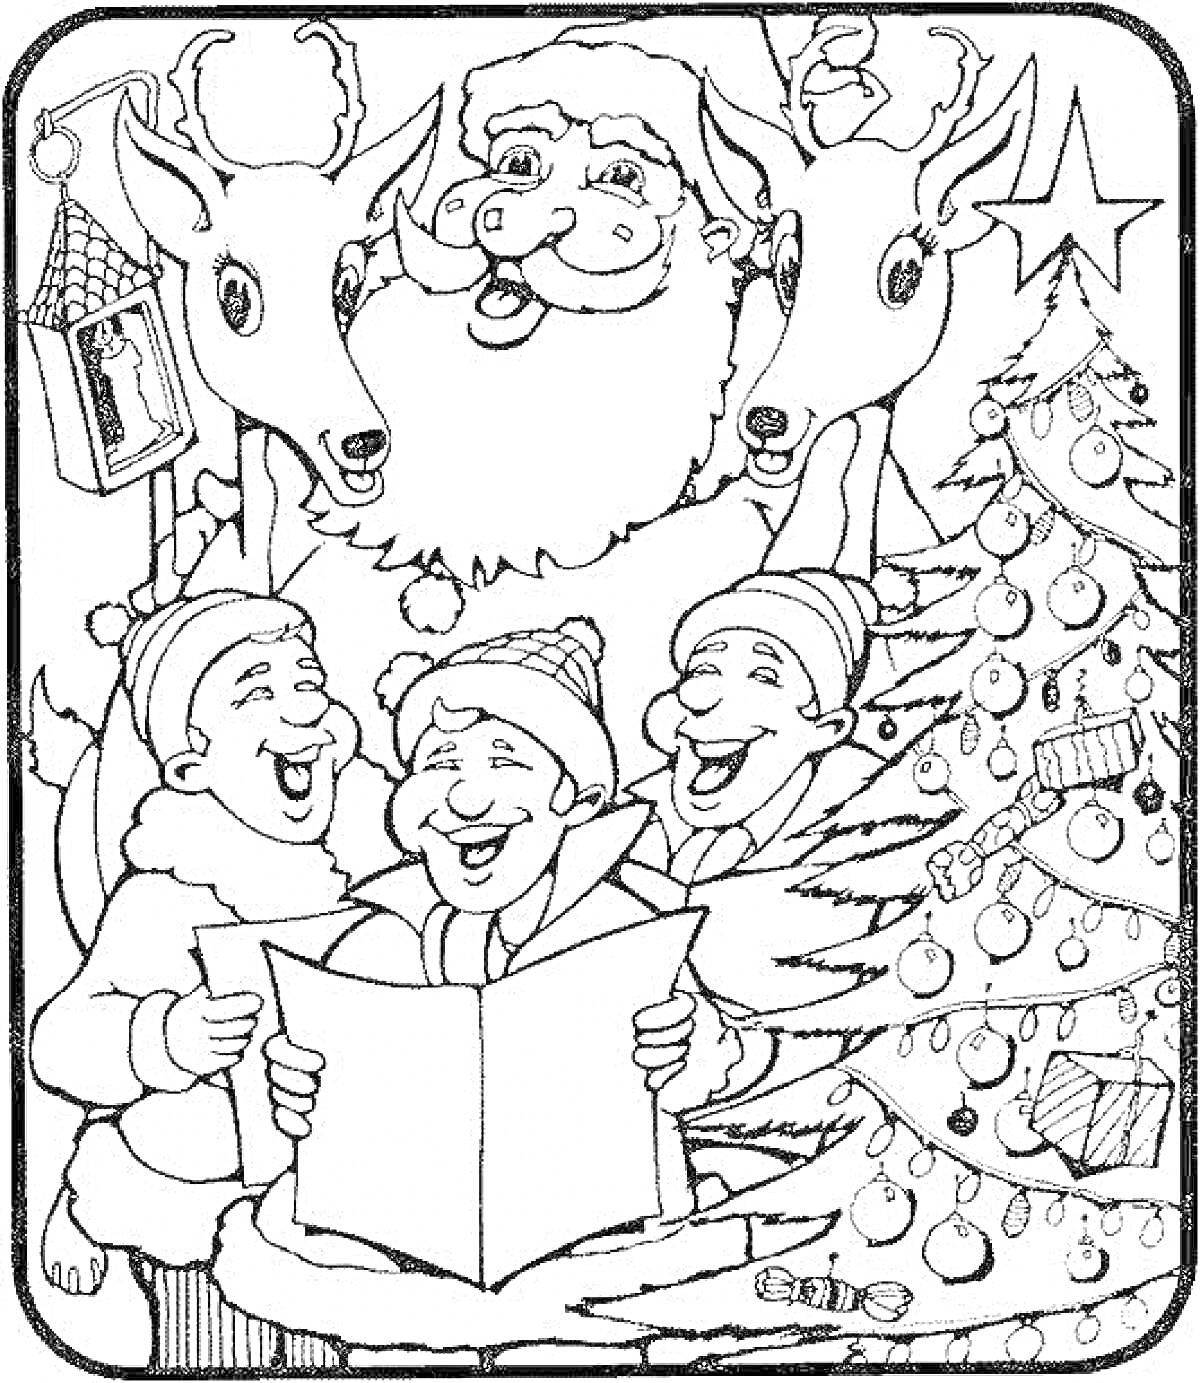 Санта-Клаус, северные олени, три поющих человека в зимней одежде, ёлка с украшениями, звезда, рождественский фонарь.